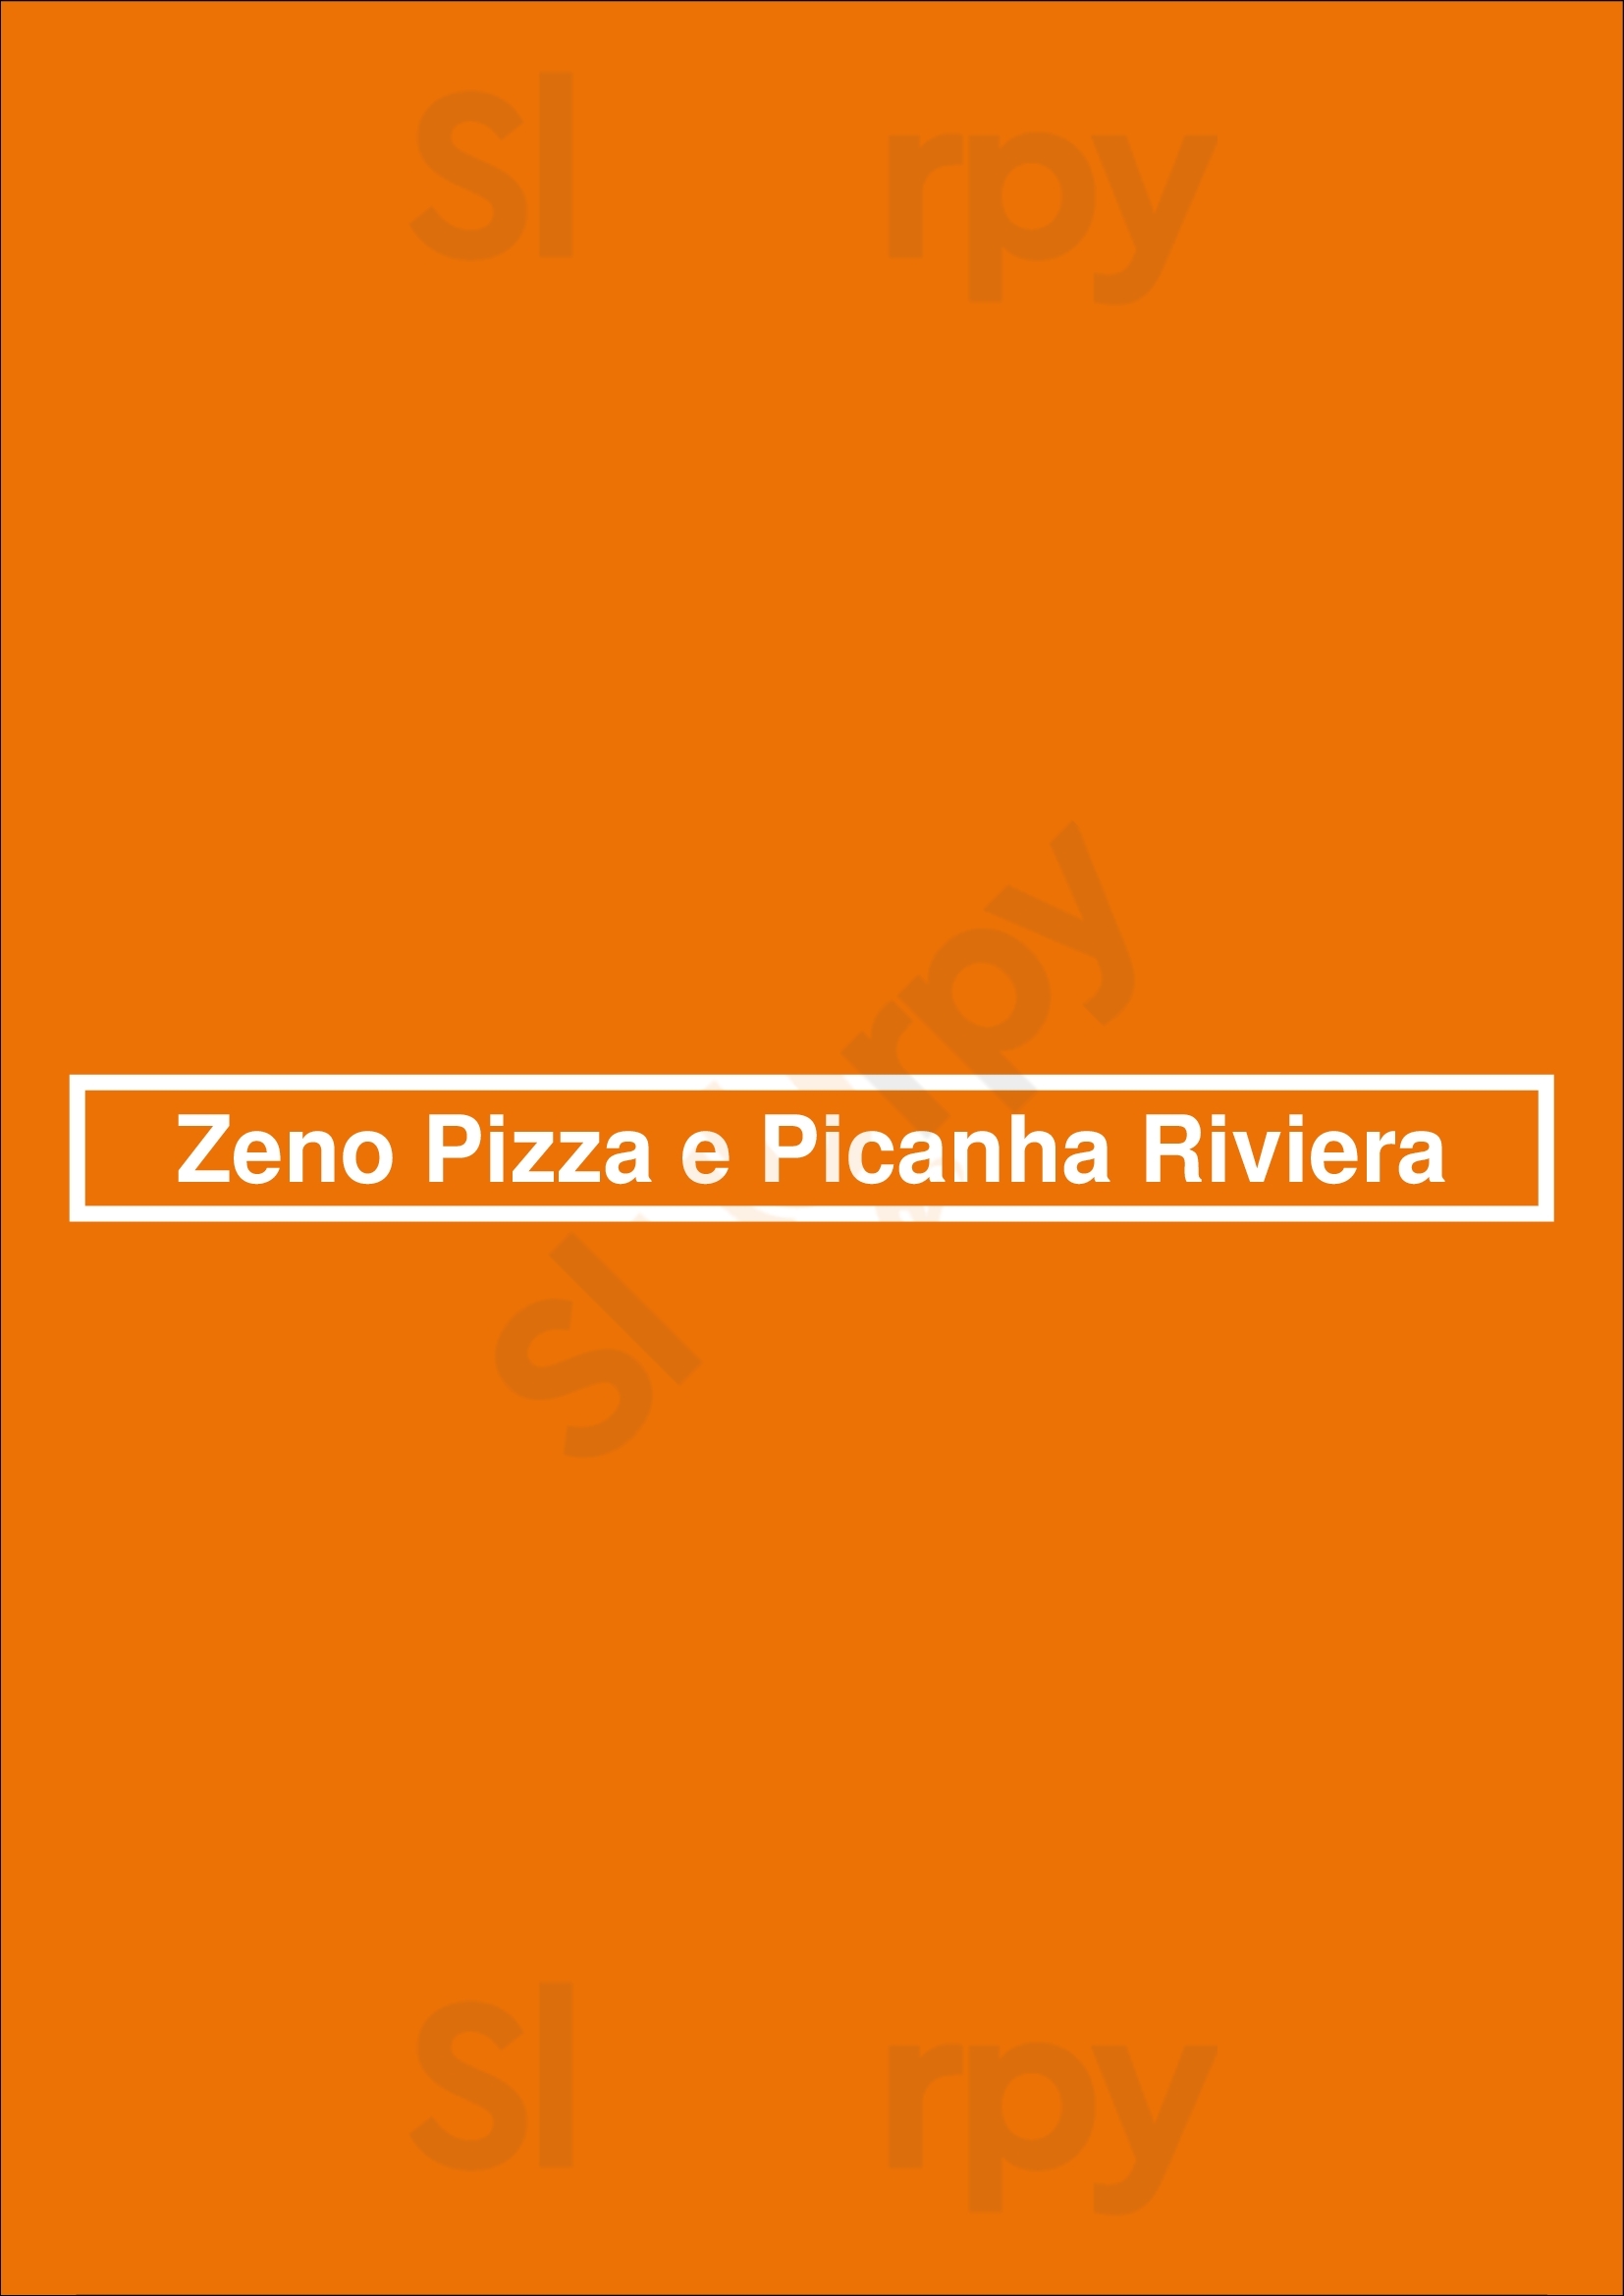 Zeno Pizza E Picanha Riviera Carcavelos Menu - 1